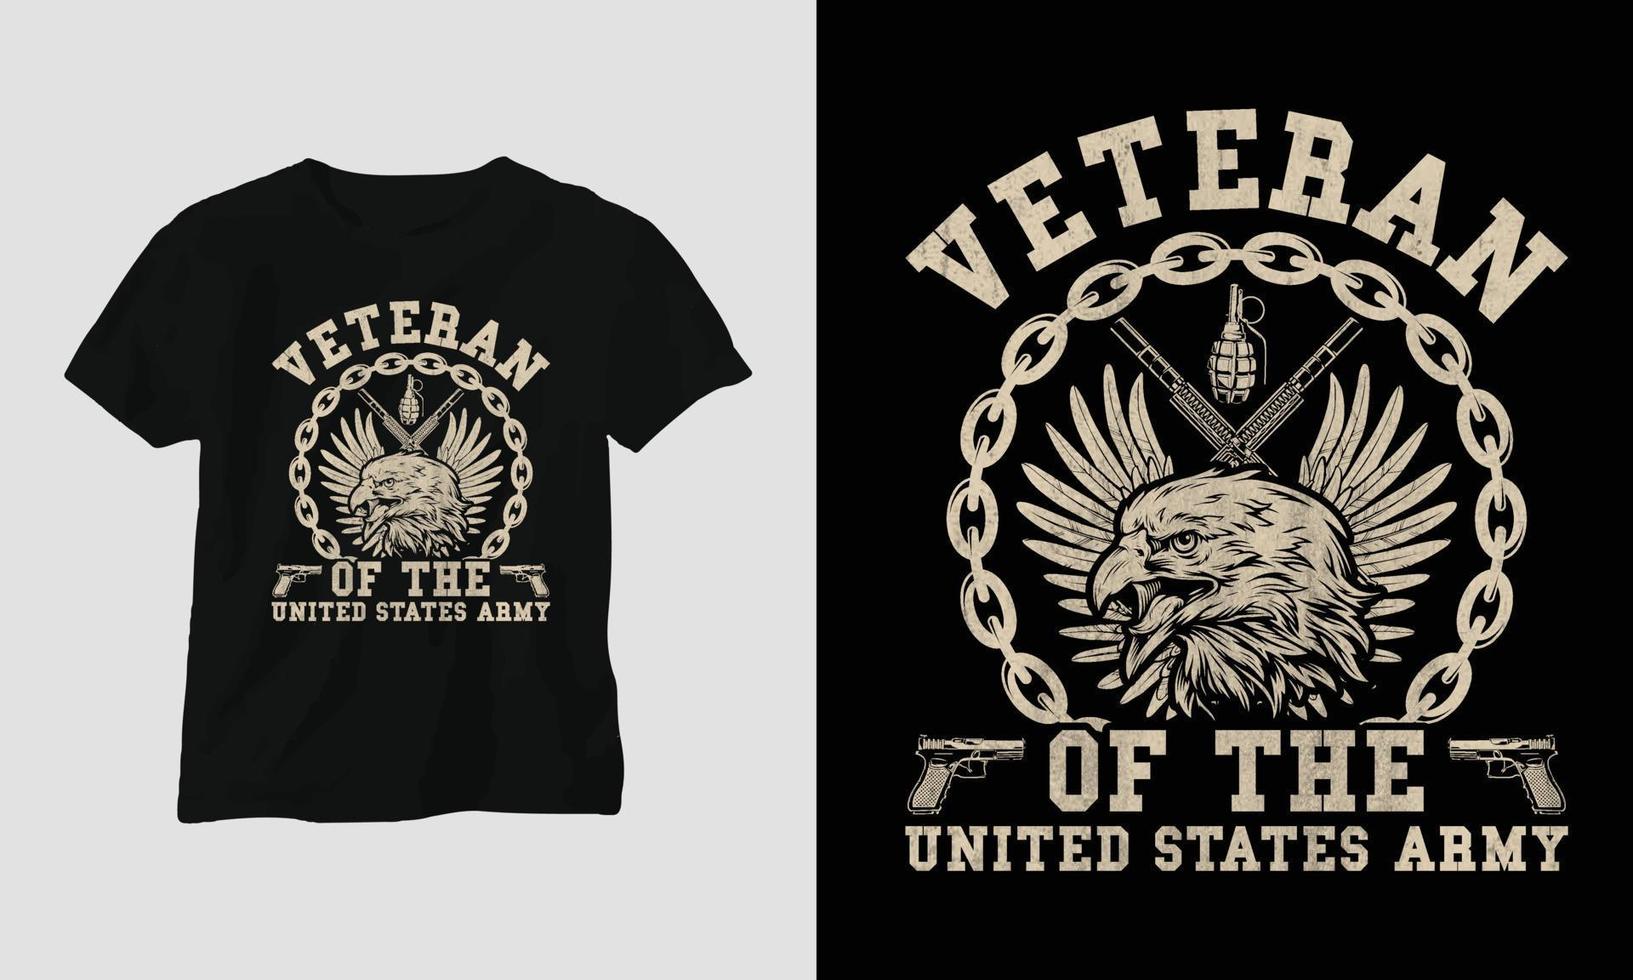 veteraner dag t-shirt design mall vektor